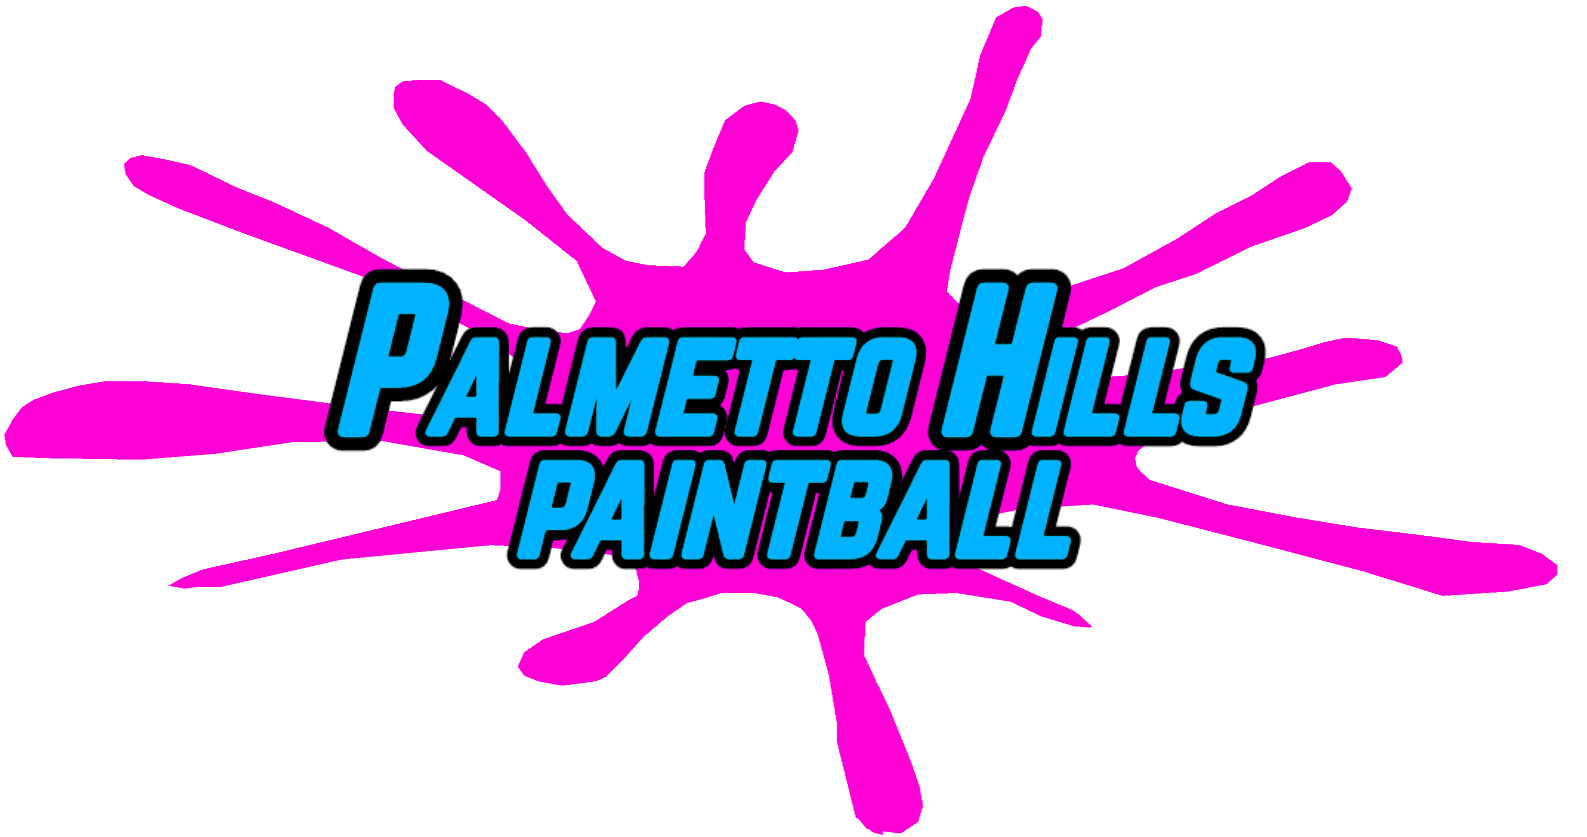 Palmetto Hills